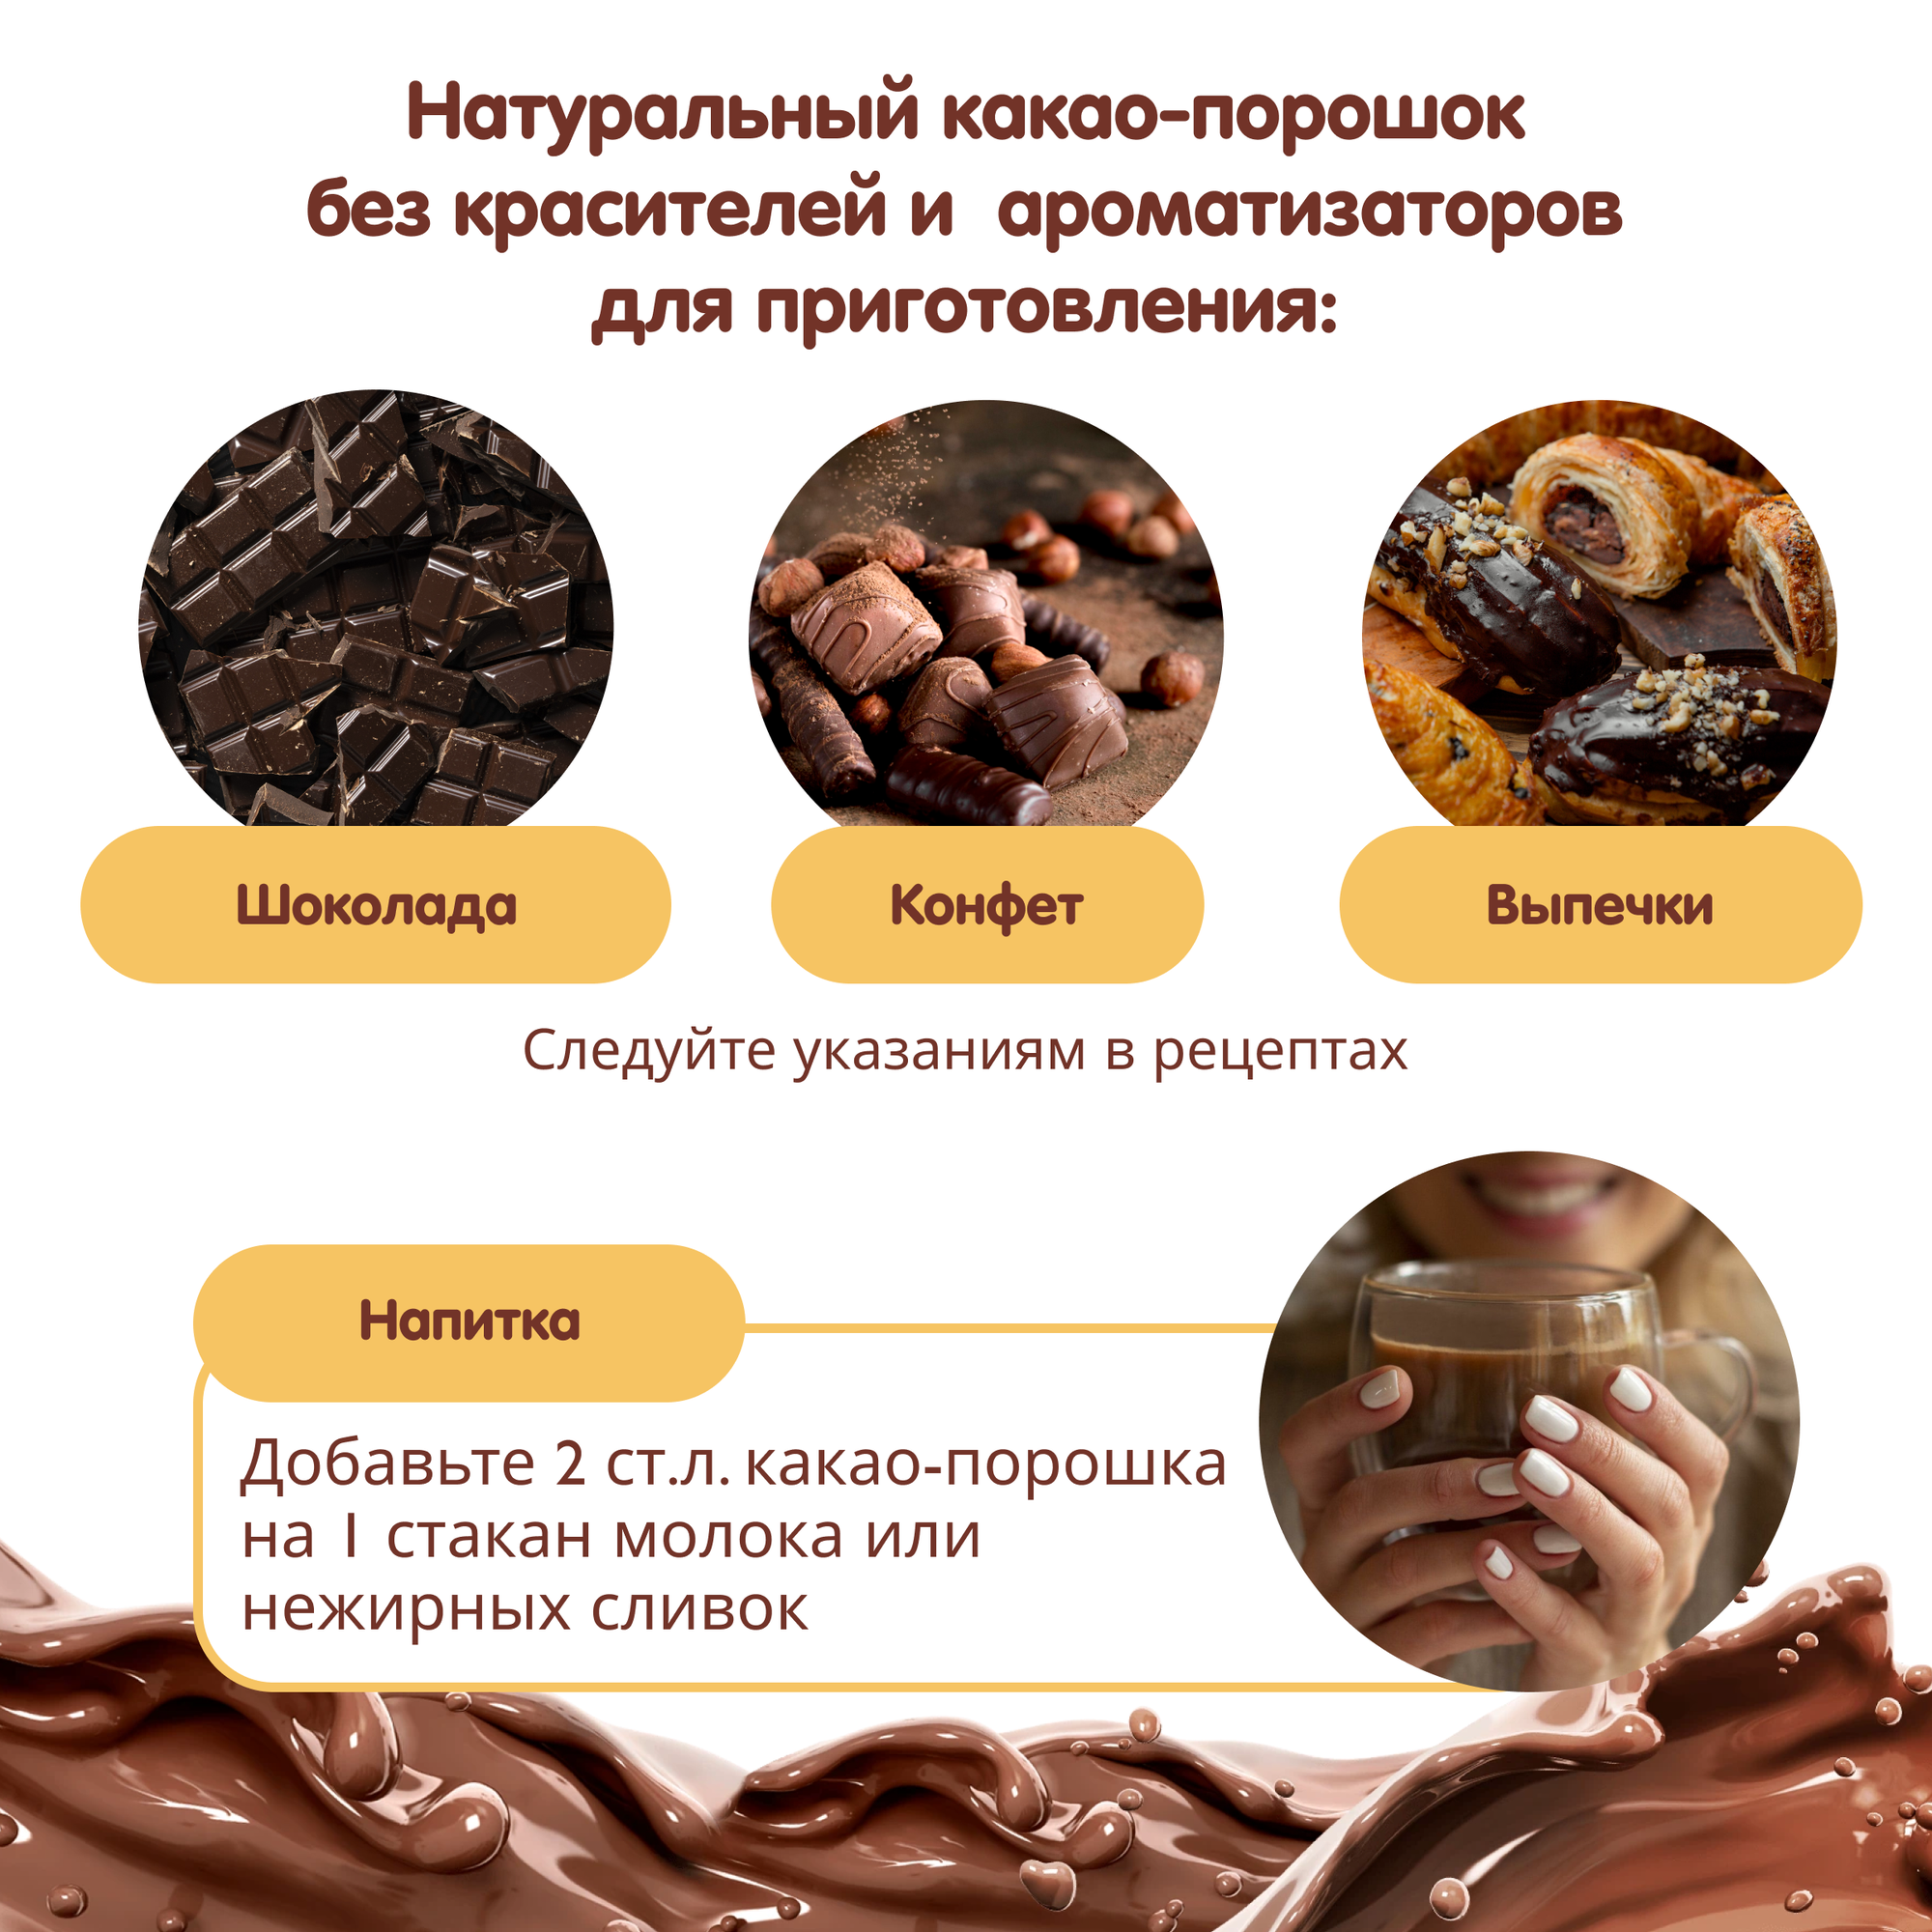 Какао порошок натуральный, 225 г. обезжиренный диетический продукт без сахара для приготовления низкокаларийных десертов, напитков